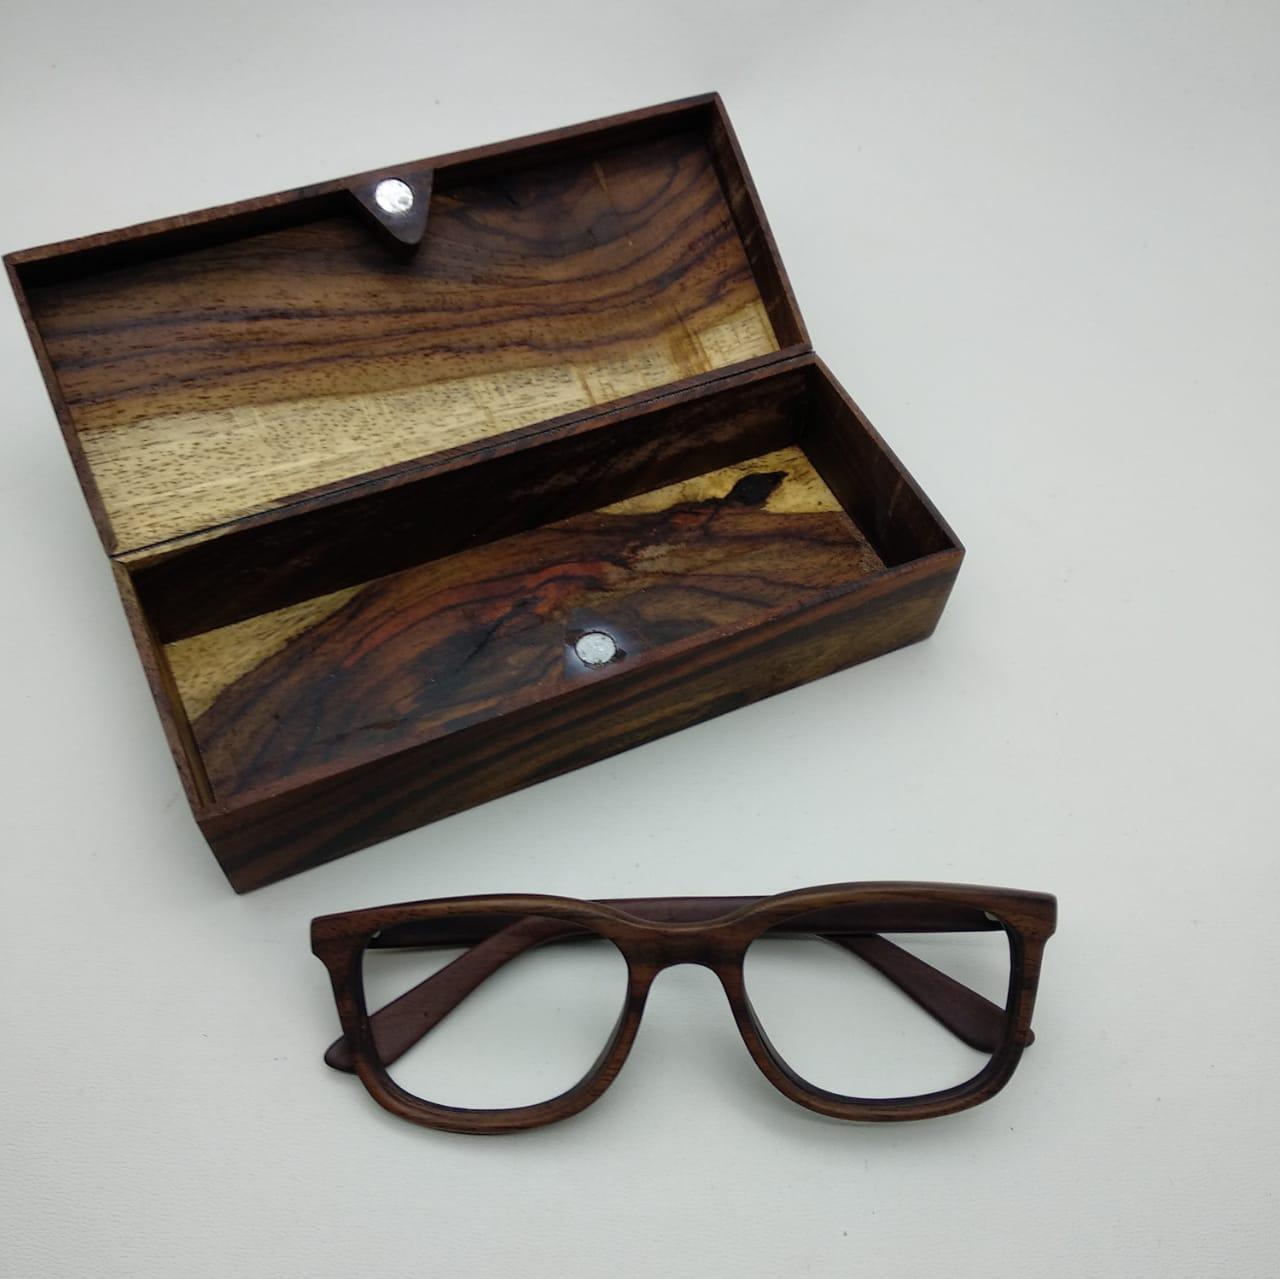 kacamata antiradiasi retro 75045 kacamata kayu